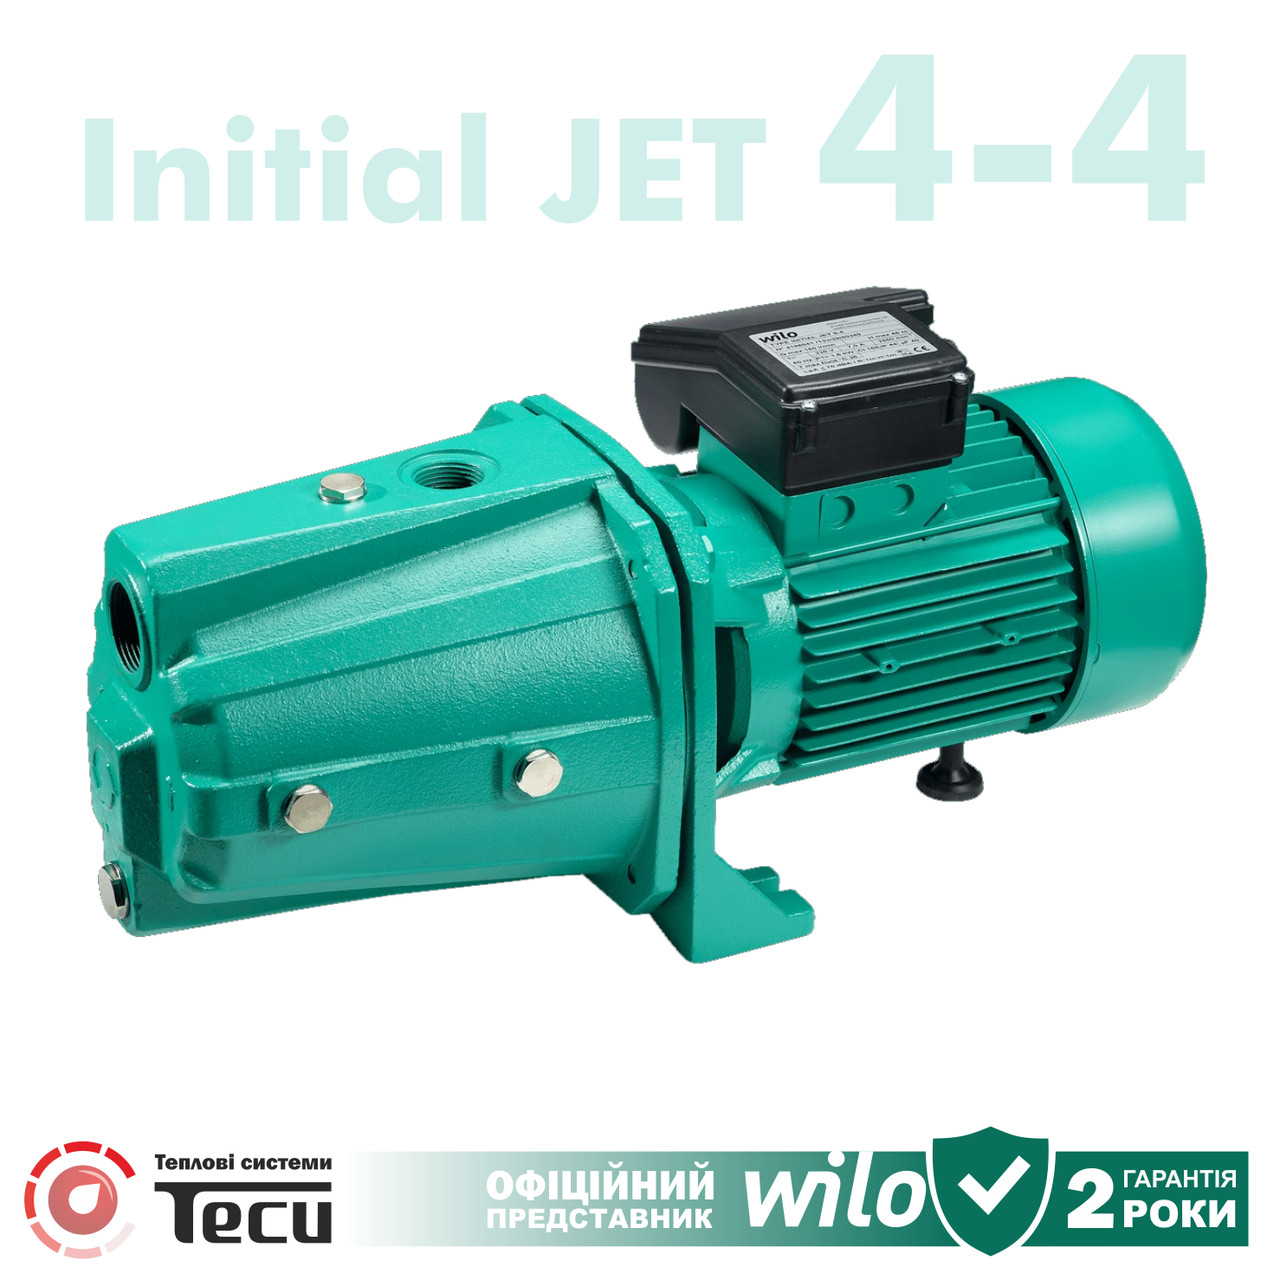 Самовсмоктувальний відцентровий насос Wilo Initial JET 4-4 (чавун) 0,75 кВт